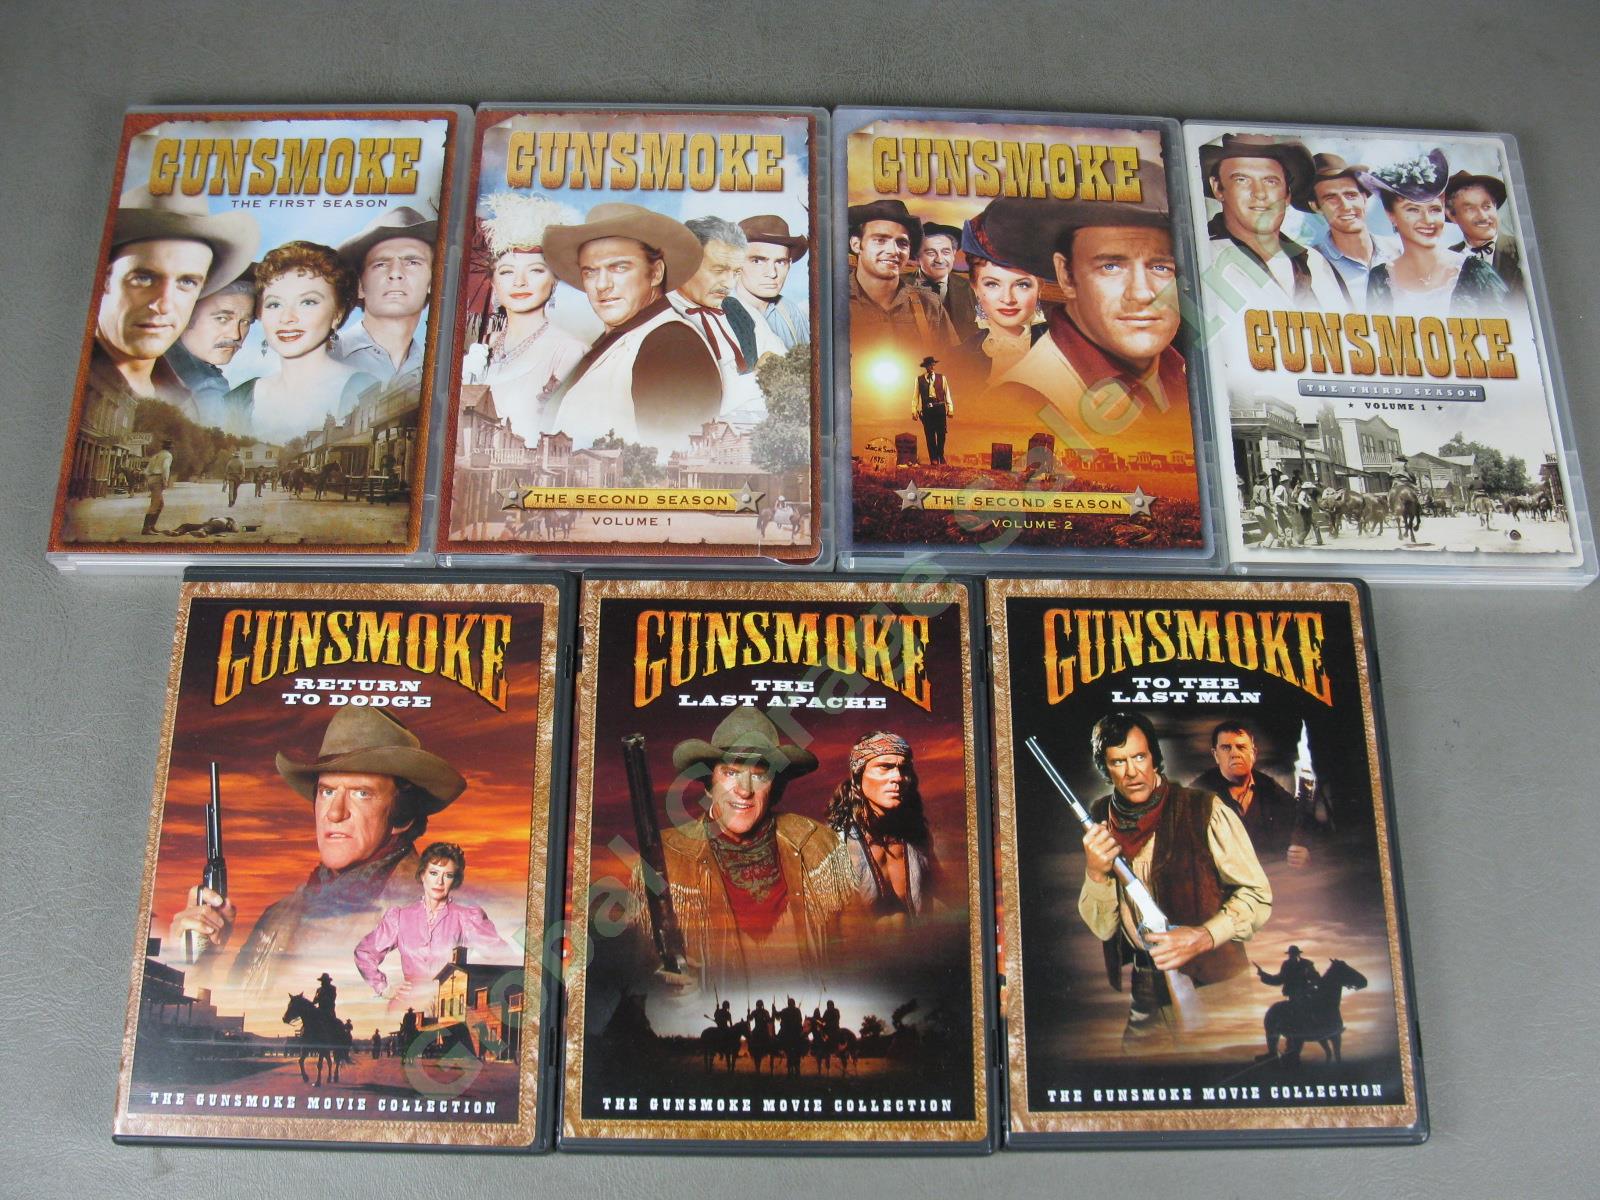 Huge Gunsmoke + Bonanza Western TV Series Complete Seasons + Movies DVD Lot NR! 6